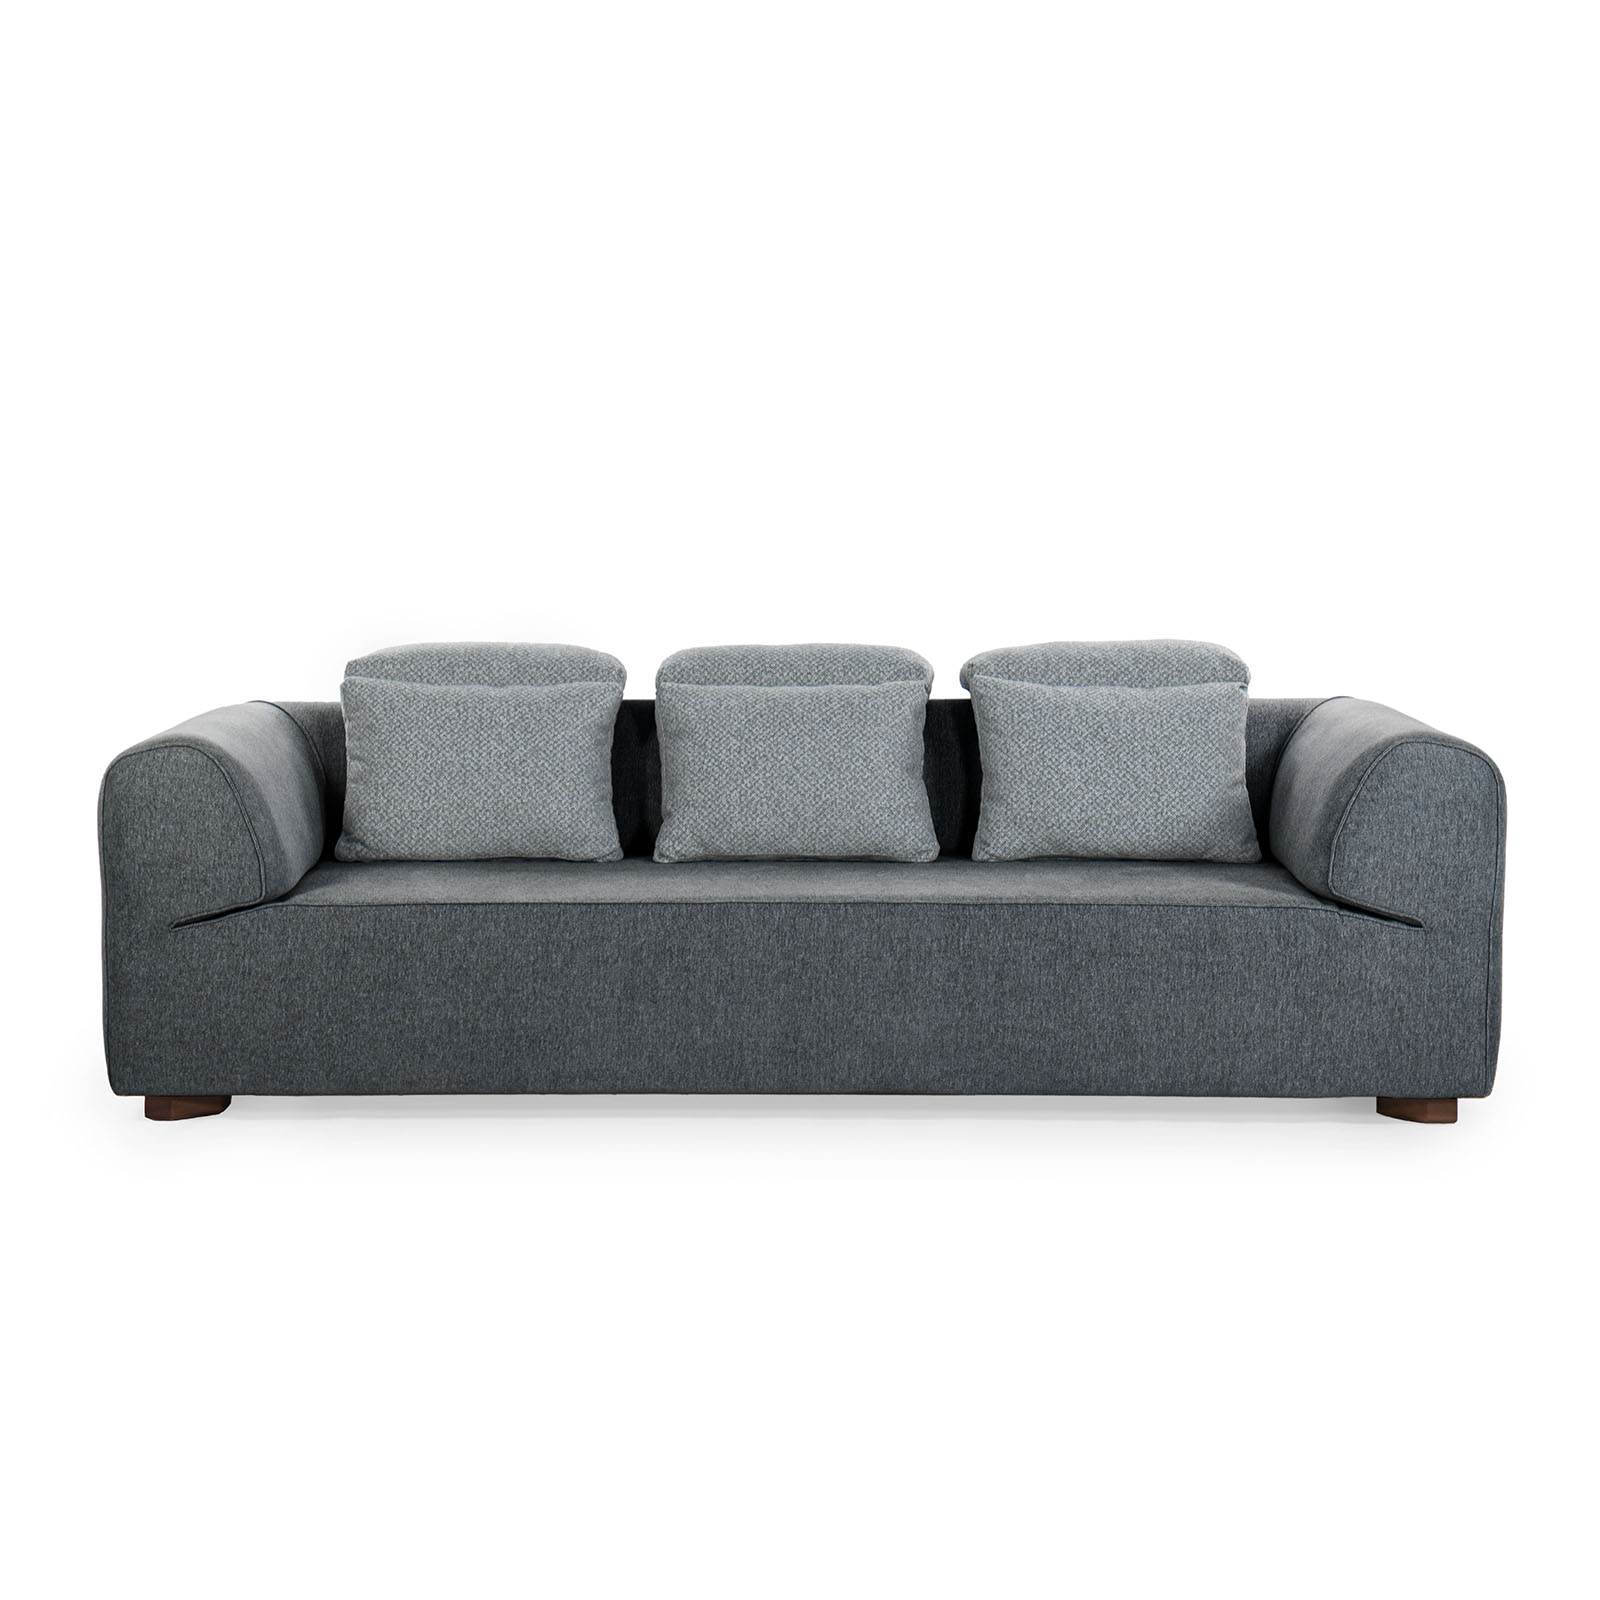 new minion modern sofa